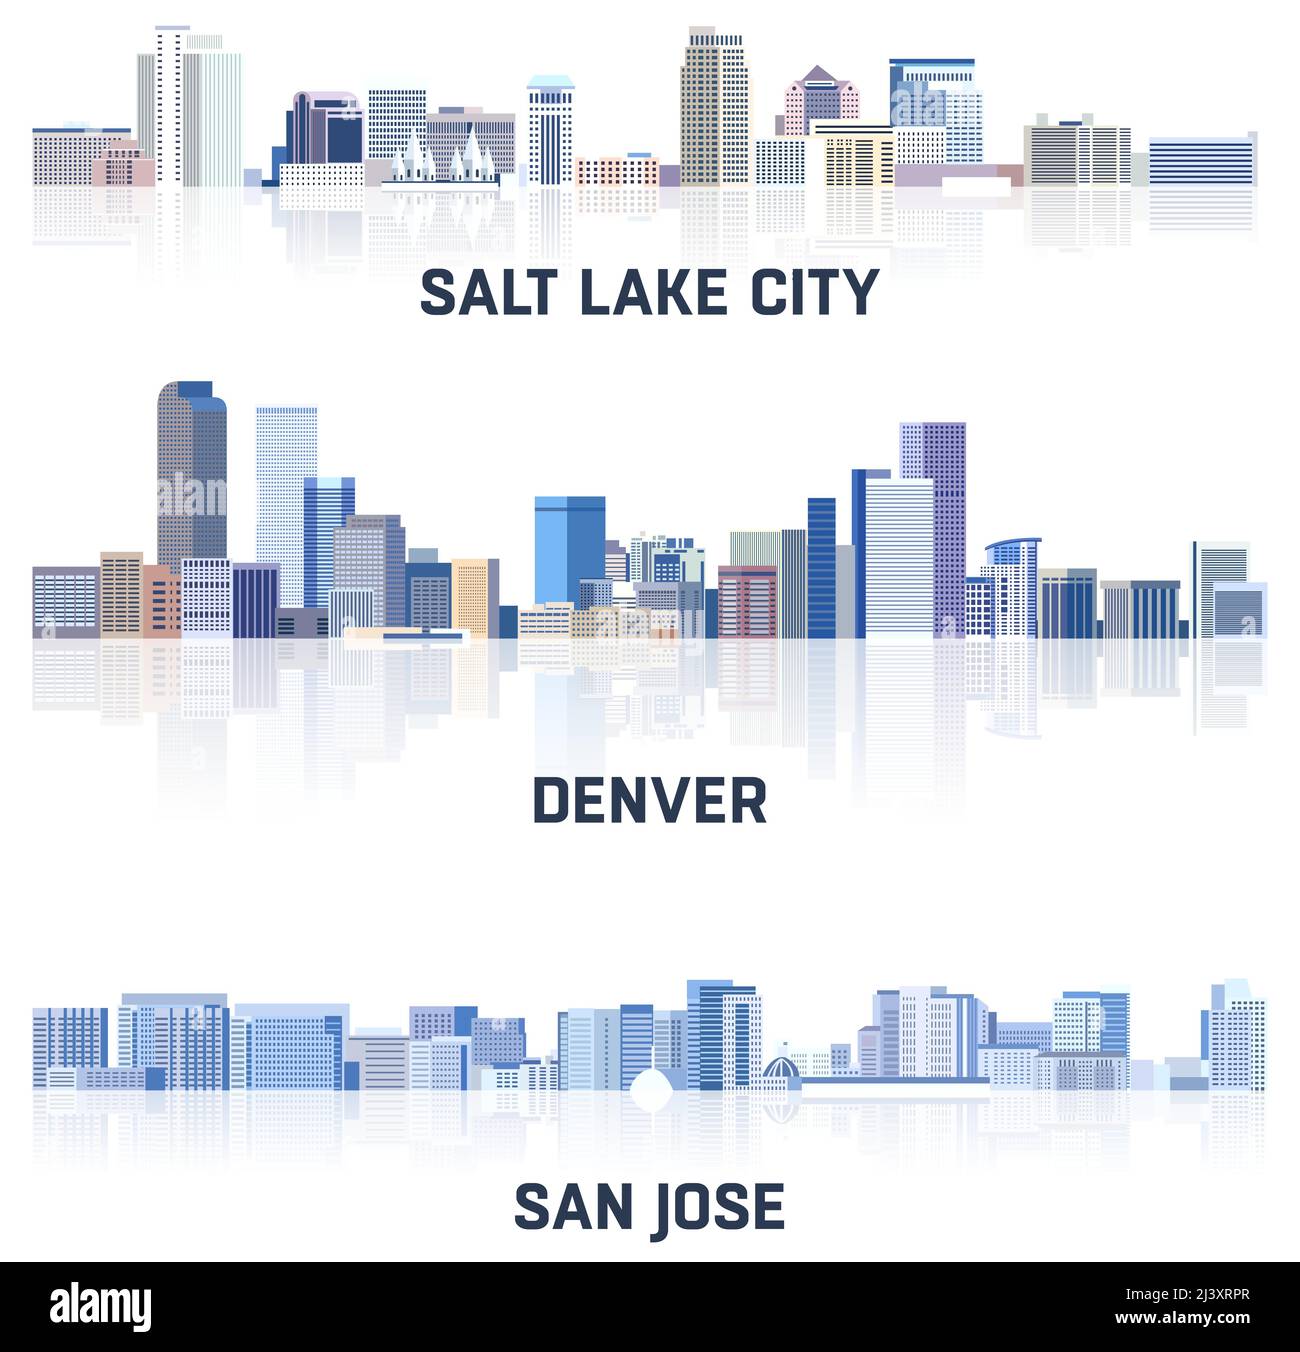 Collection vectorielle de villes des États-Unis : Salt Lake City, Denver, San Jose Skylines en teintes de couleur bleue. Сrystal style esthétique Illustration de Vecteur